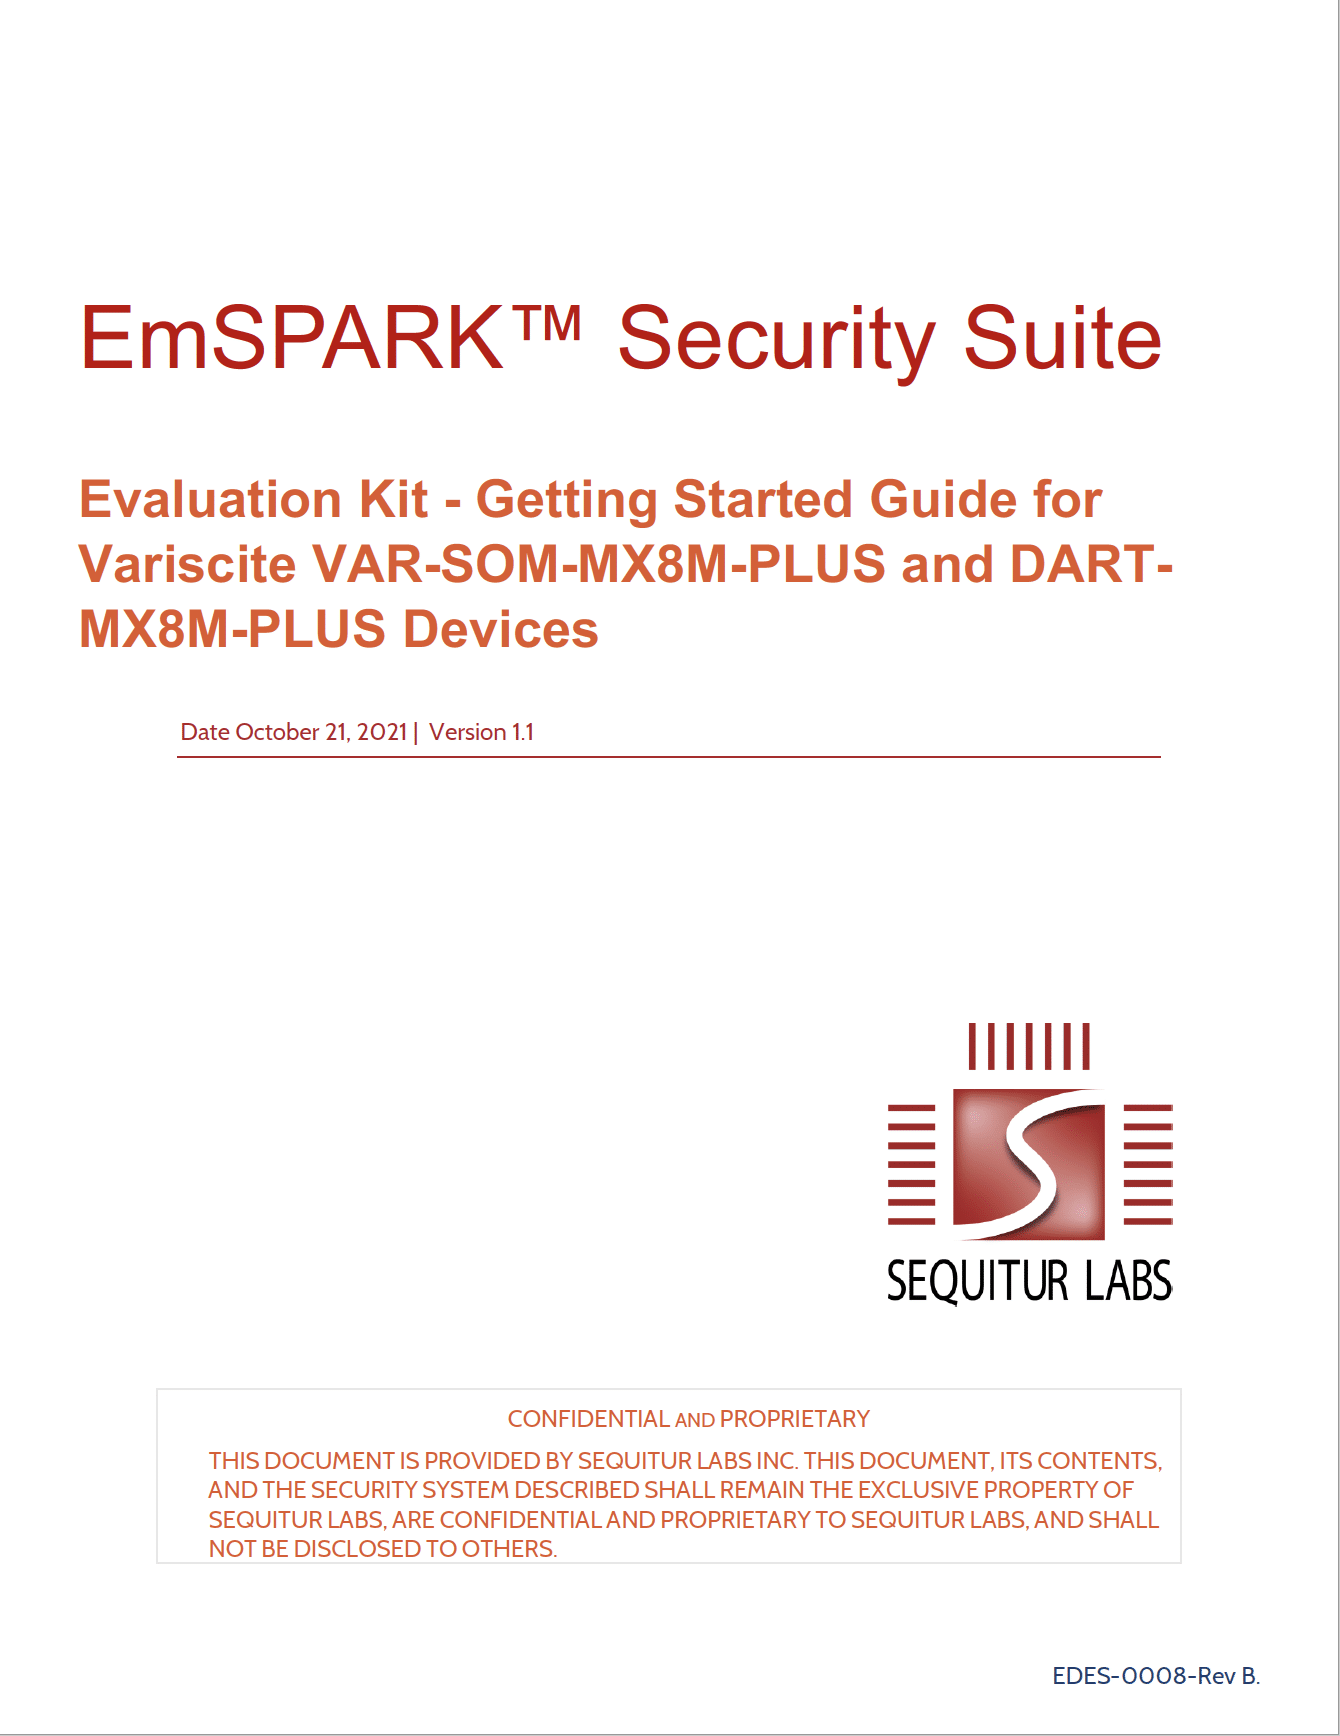 Variscite EmSPARK™ Security Suite CoreLOCKR™ Libraries User Guide version 1.1